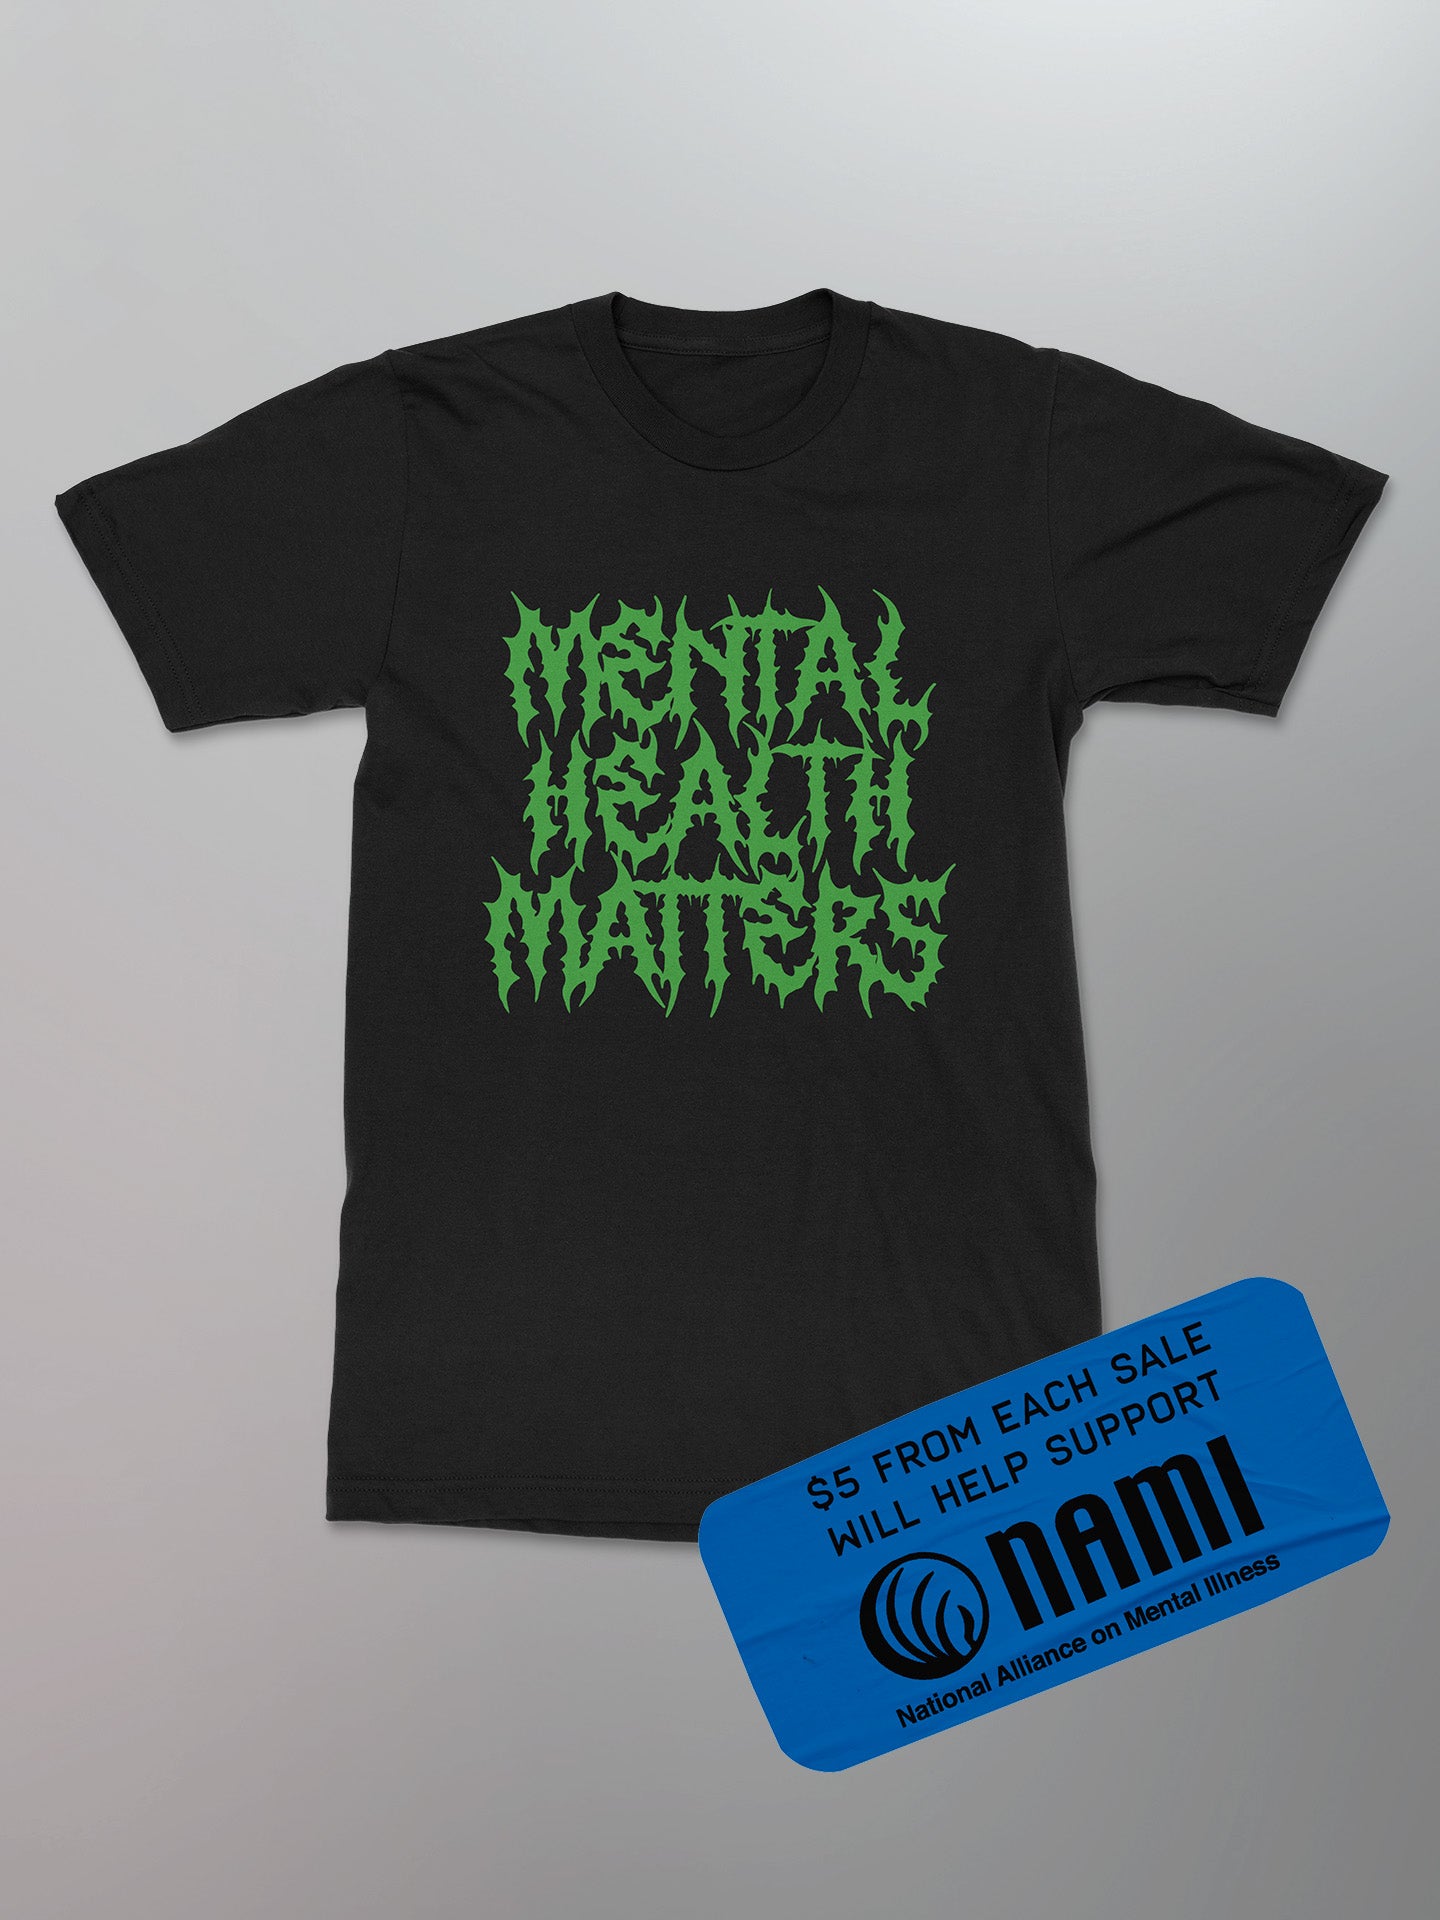 FiXT - Mental Health Matters Shirt [Green]